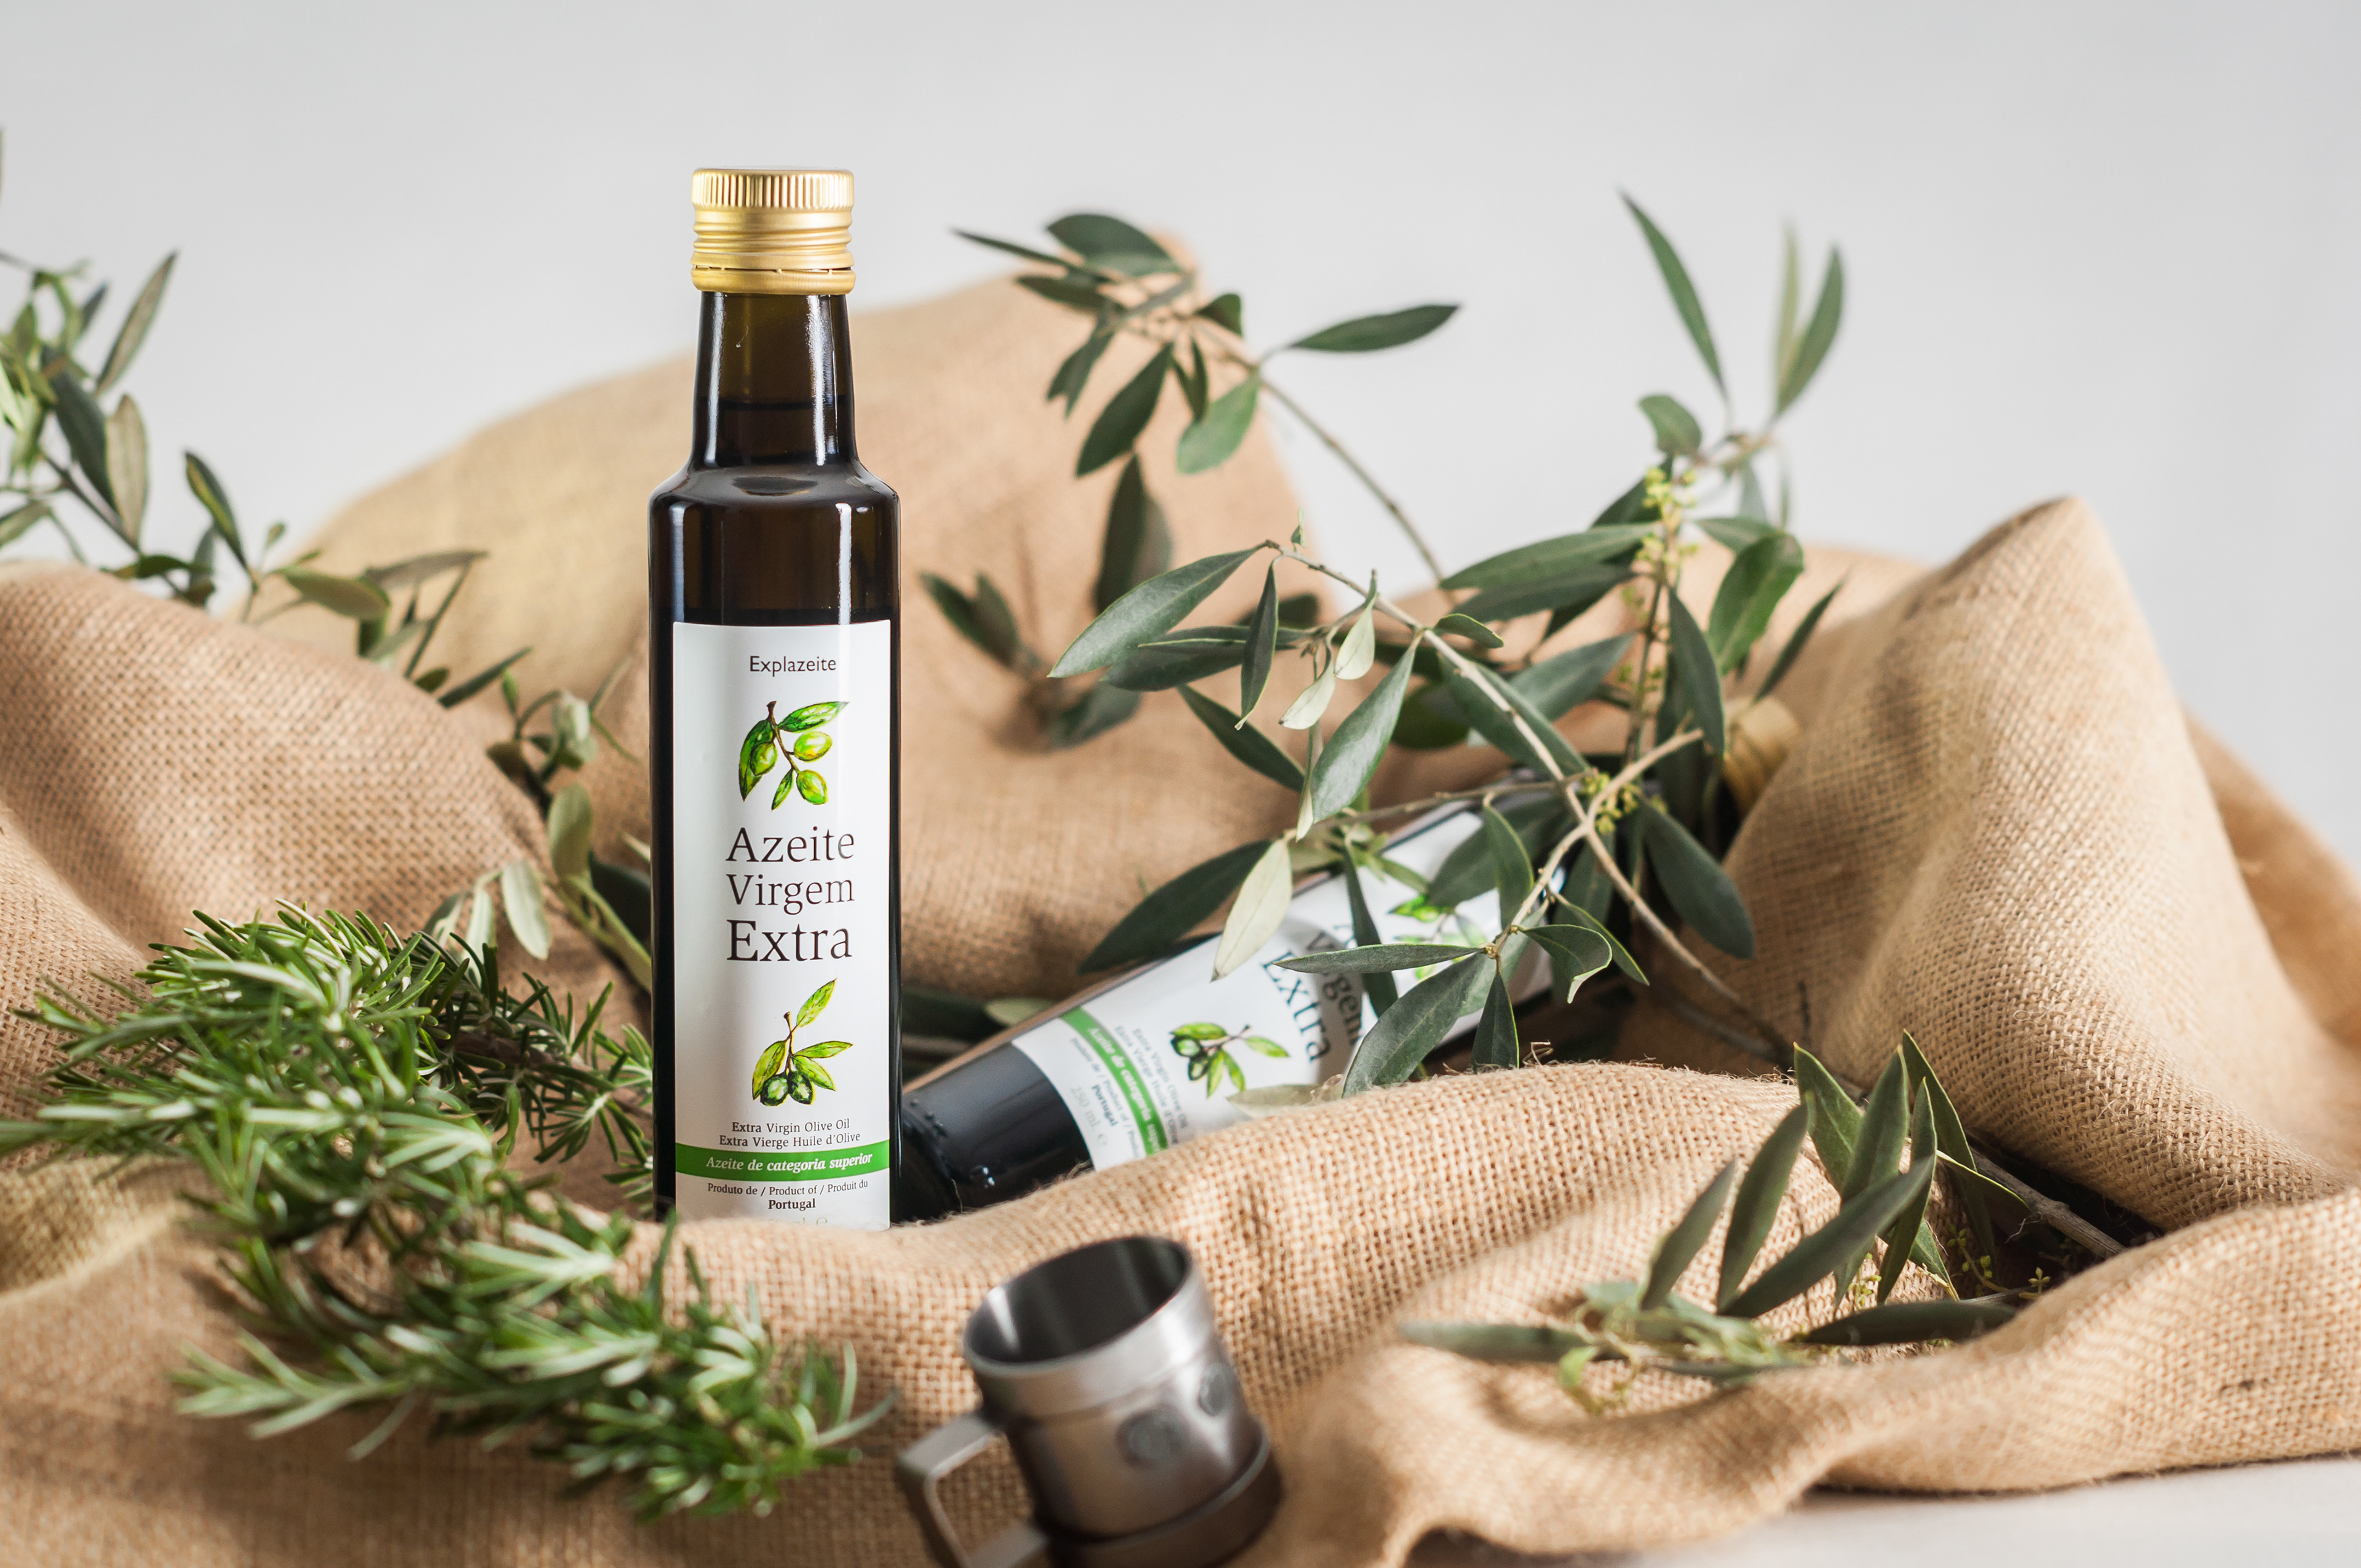 Azeite / Olive Oil.